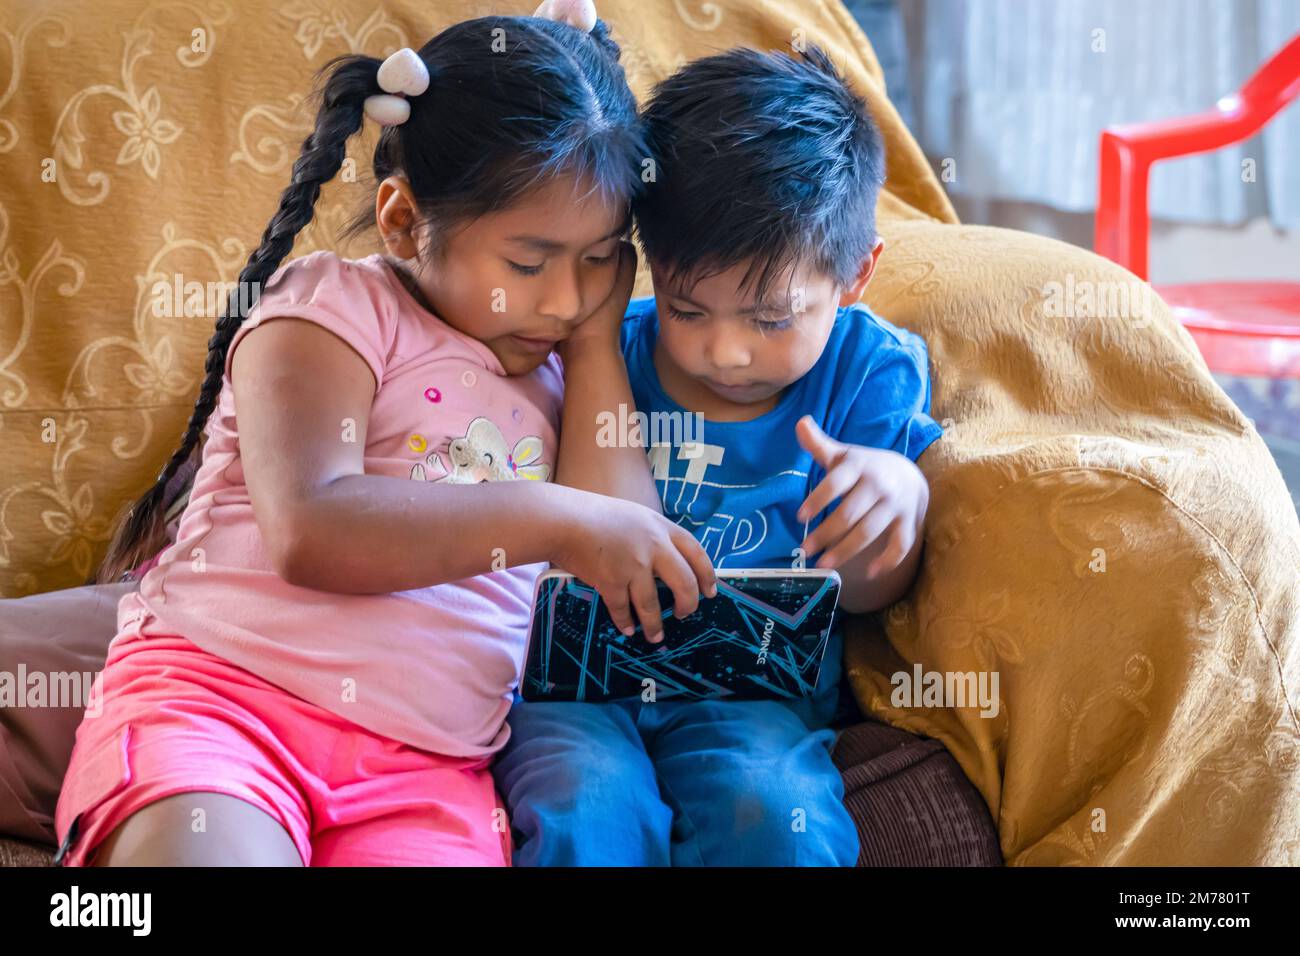 Gesichter der Welt: Peruanische Kinder spielen auf Tablets Stockfoto